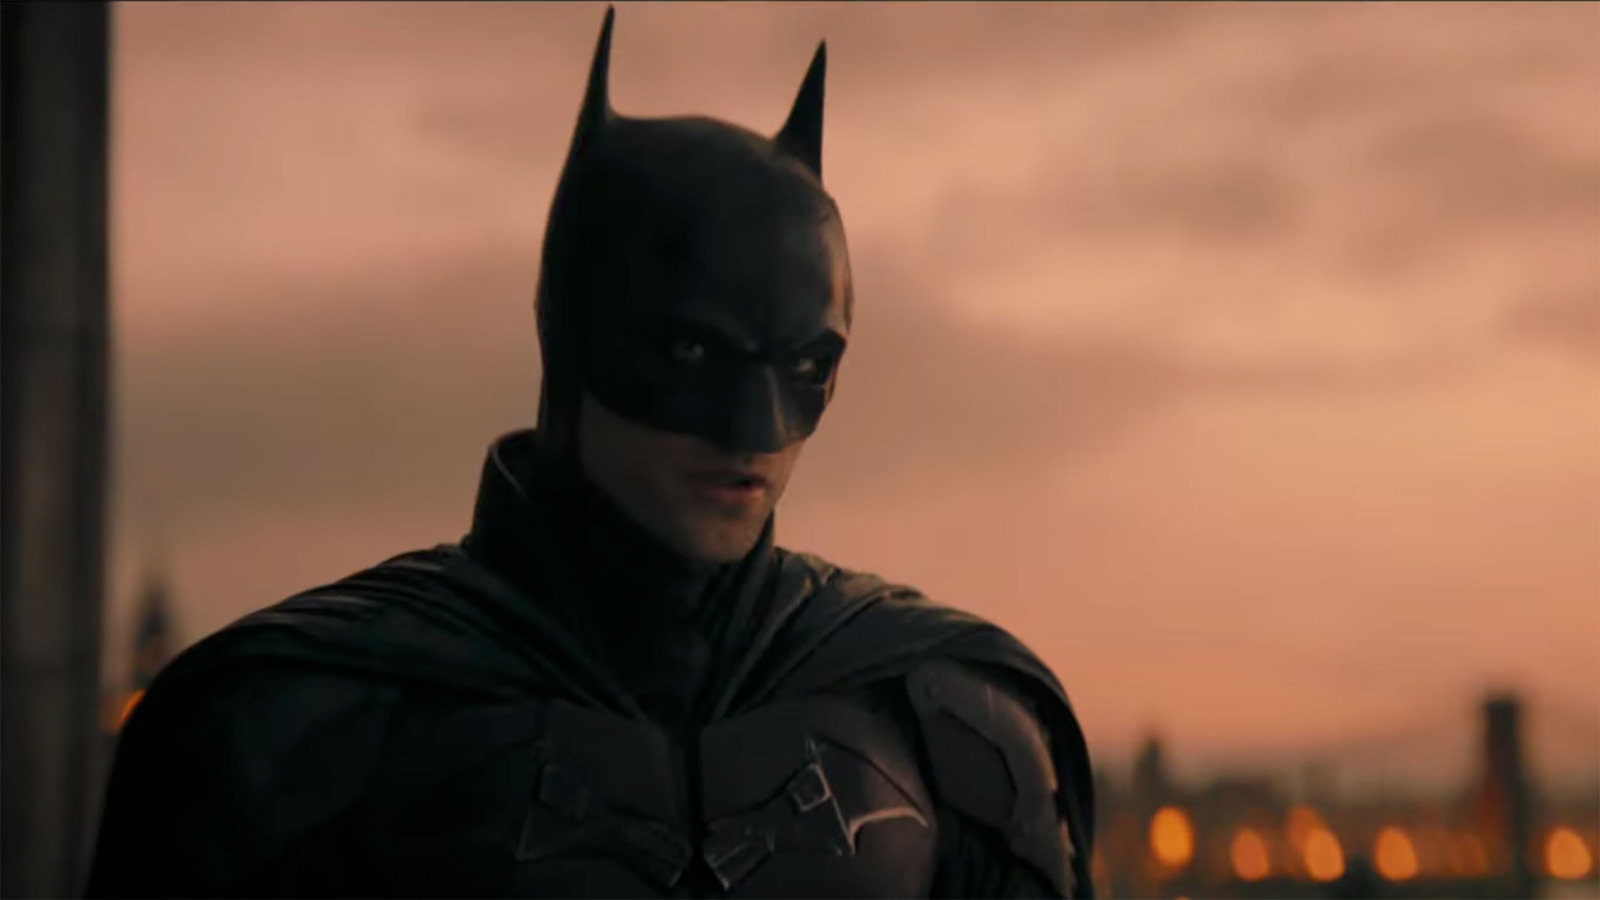 #Wait, Is The Batman The Best Batman Movie?